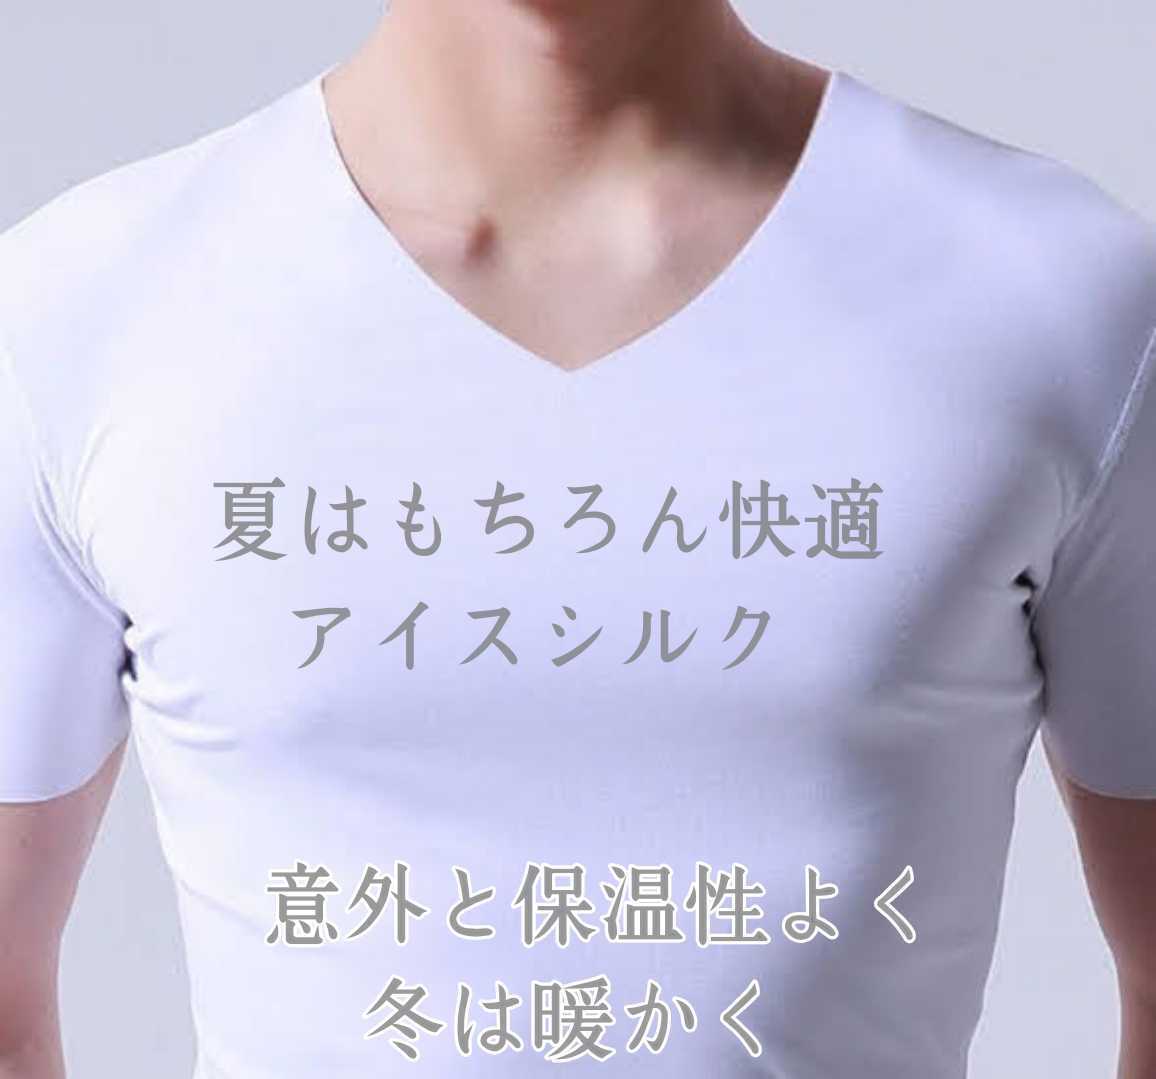 インナーシャツ 半袖 アンダーシャツ アイスシルクシャツ メンズシャツ Tシャツ ひんやりシャツ Vネック 半袖下着 男性下着 男性肌着